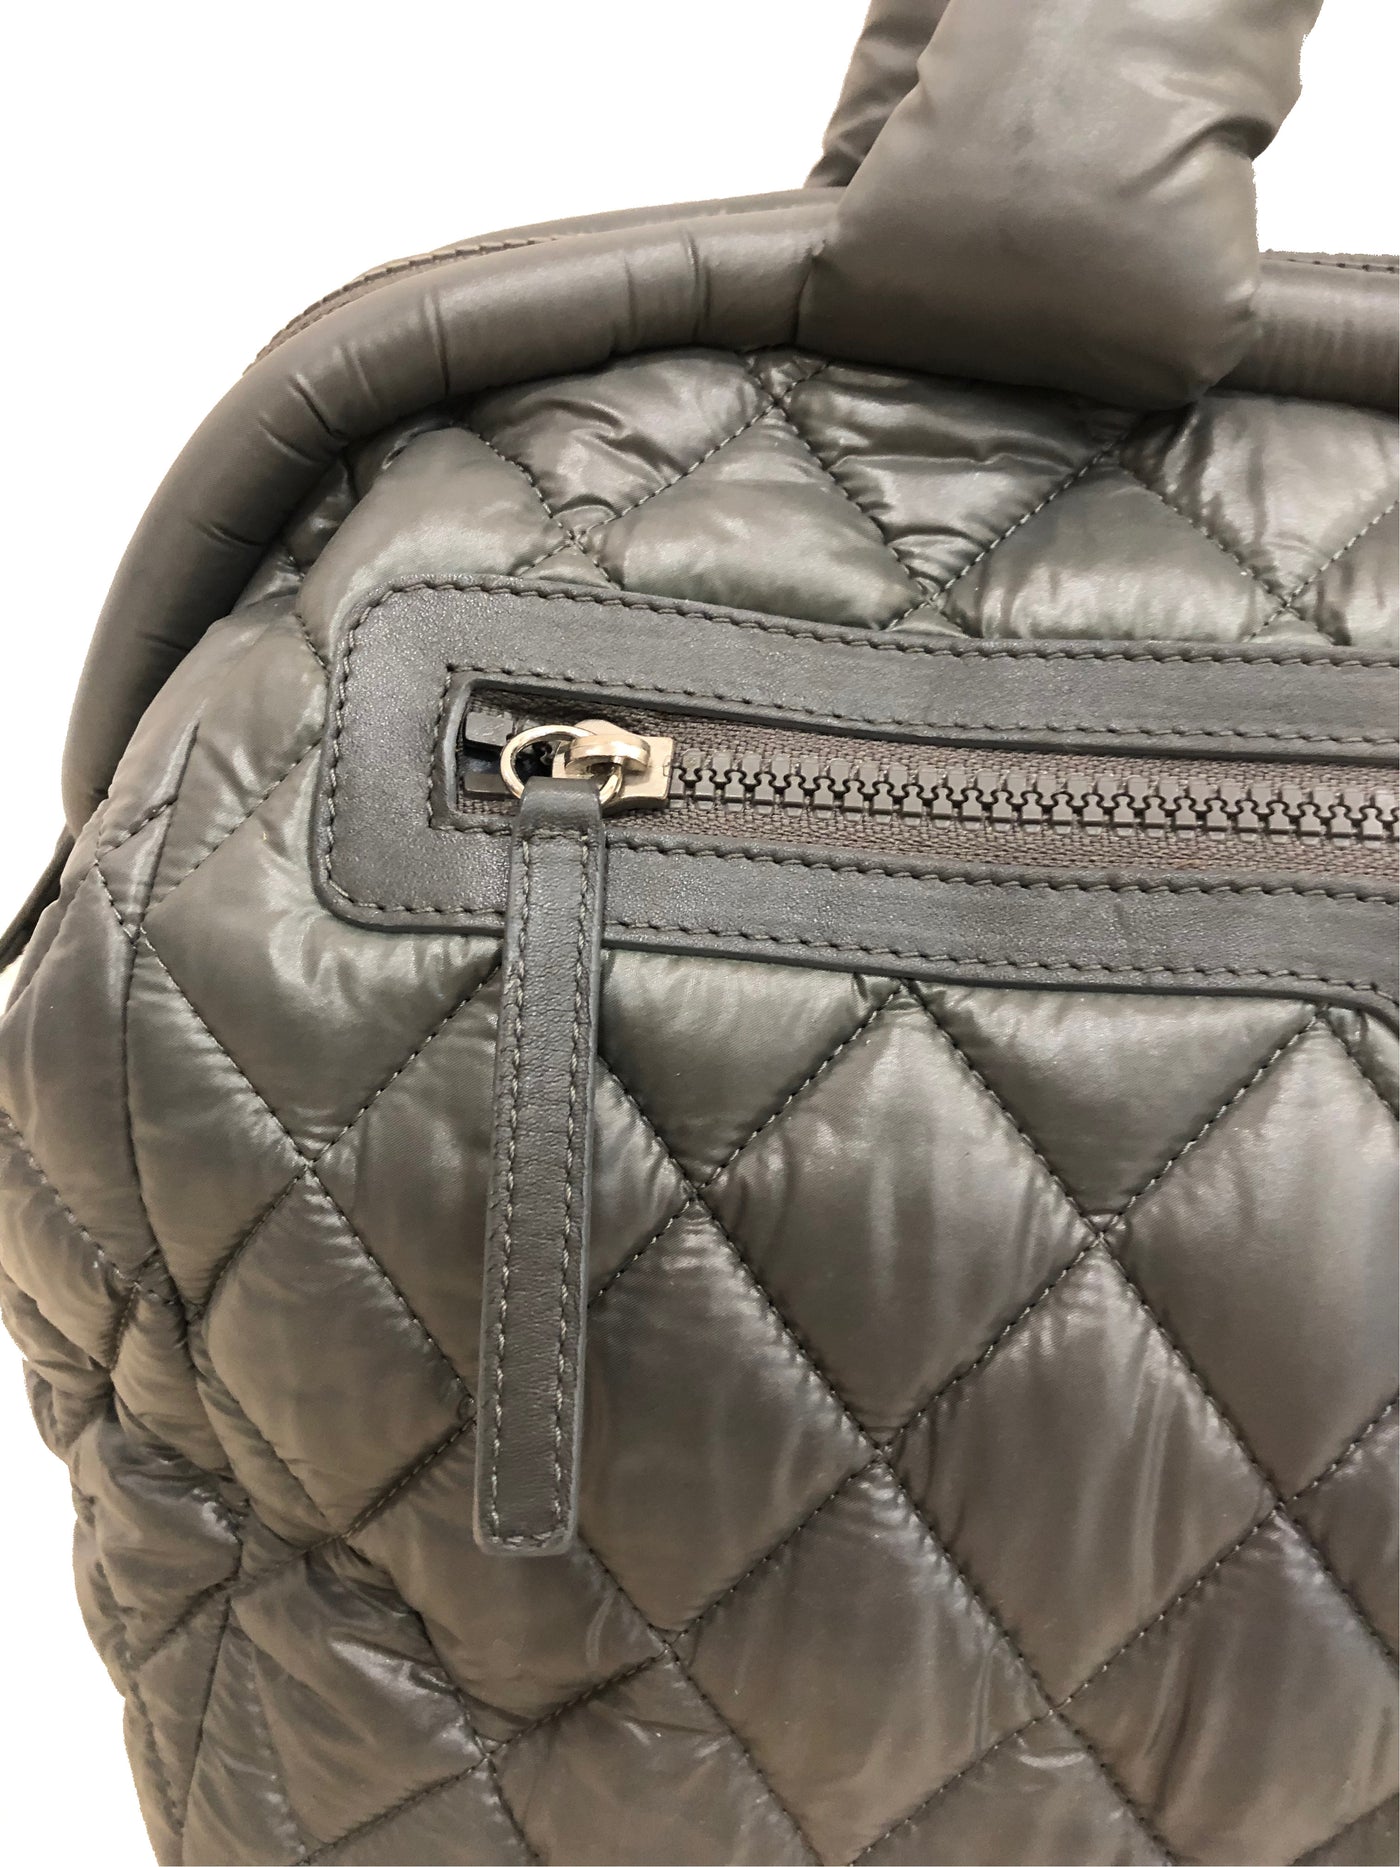 CHANEL Coco Cocoon Quilted grey handbag